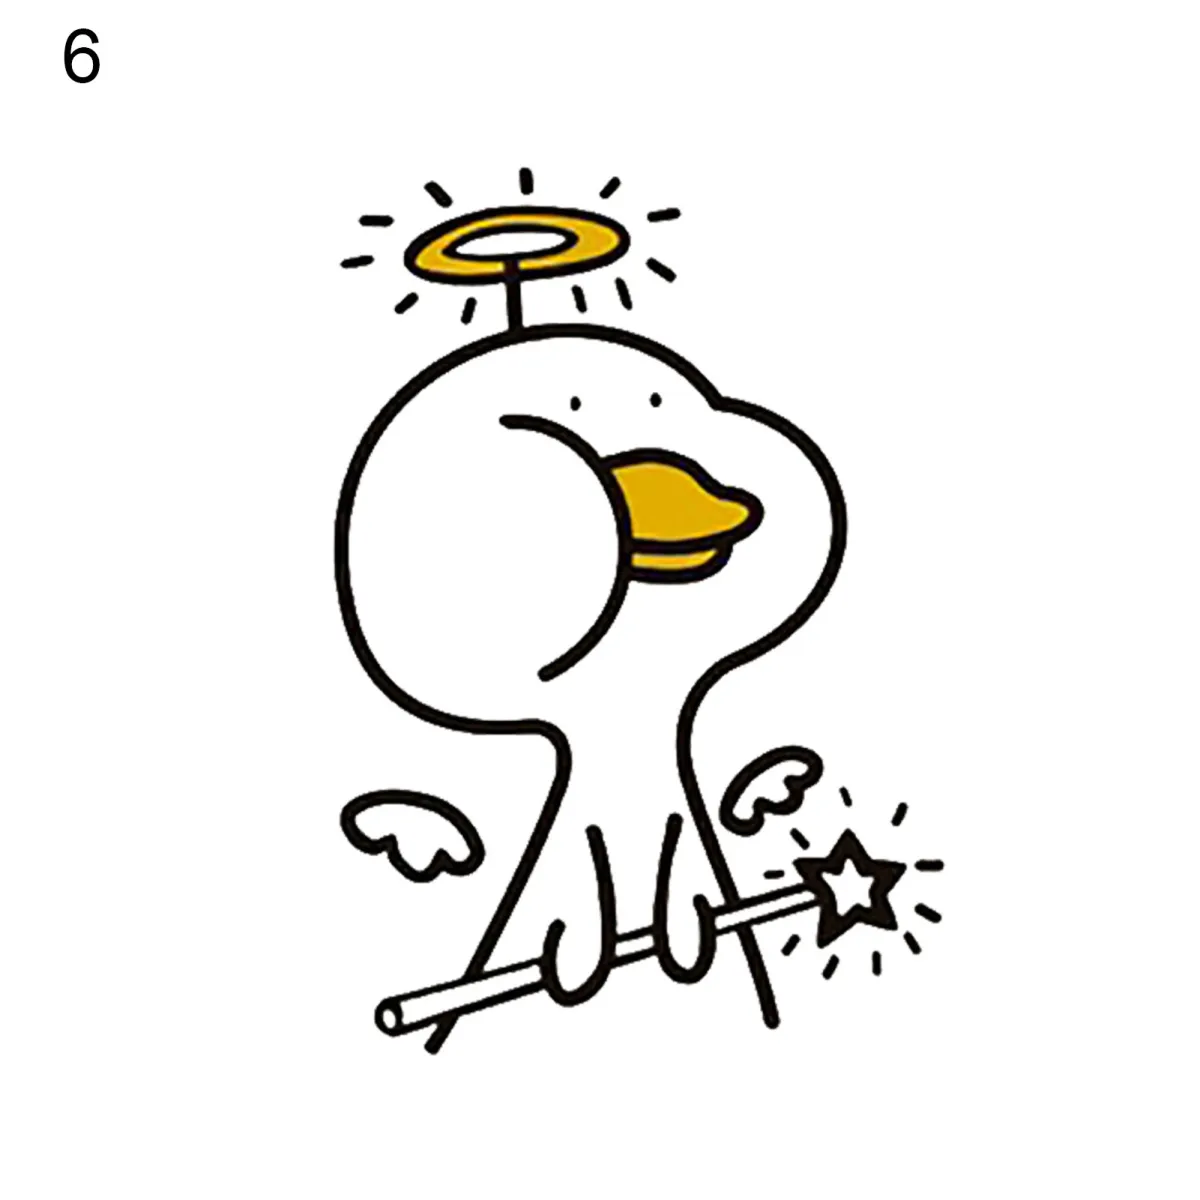 Tìm kiếm popu nhất về doodle vịt cute weibo trên Google là gì?